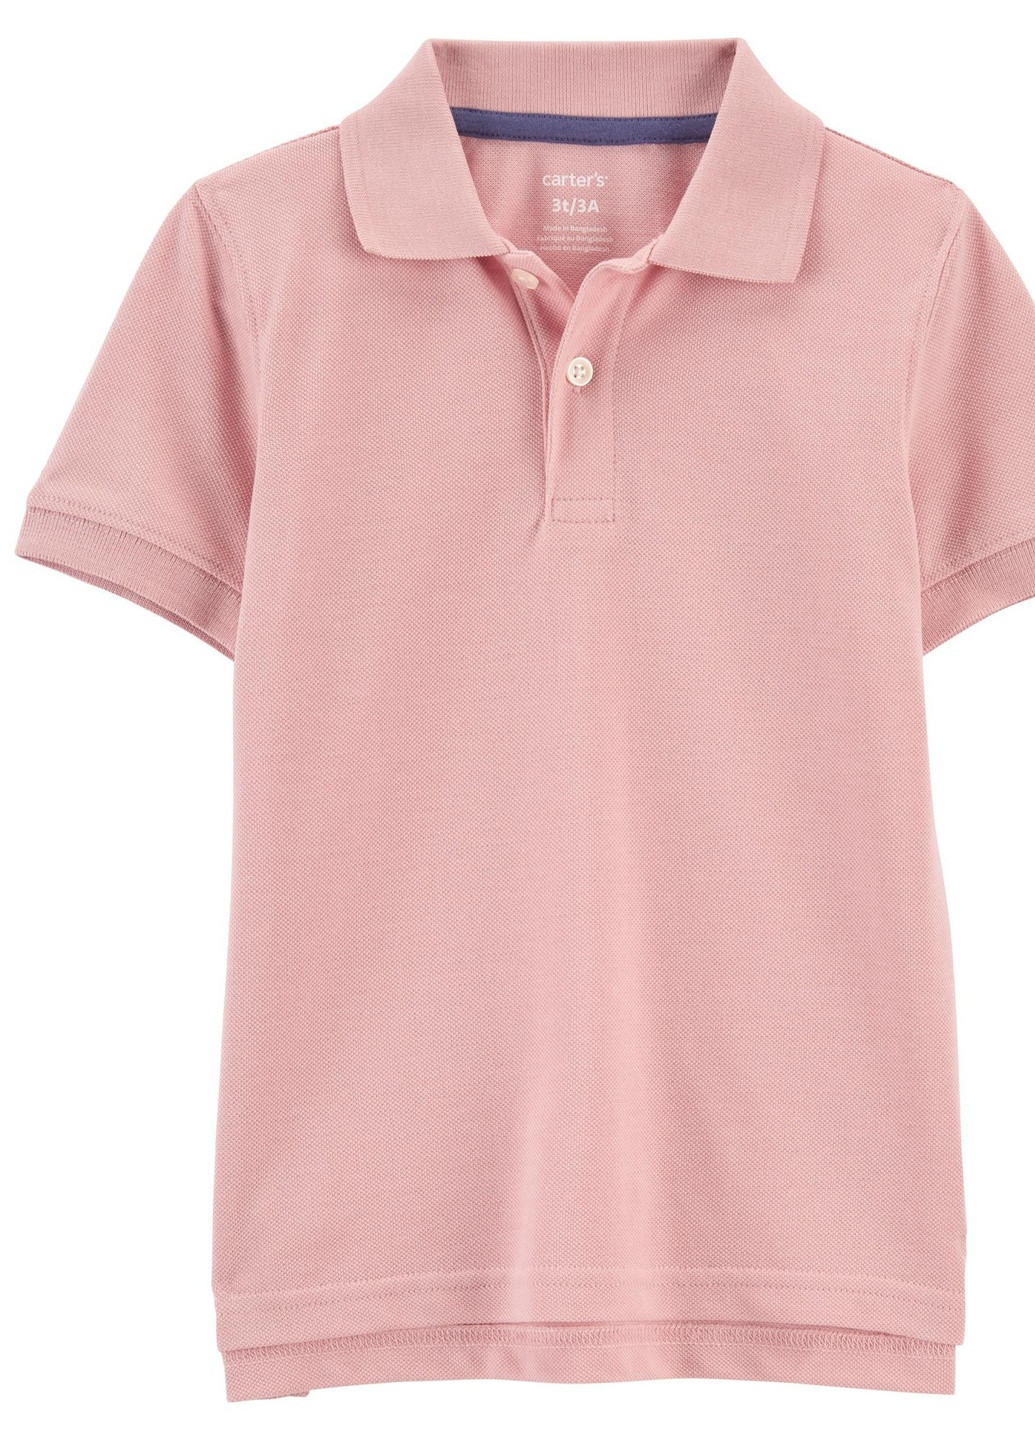 Розовая детская футболка-поло для мальчика carters 908010 розовый Carter's